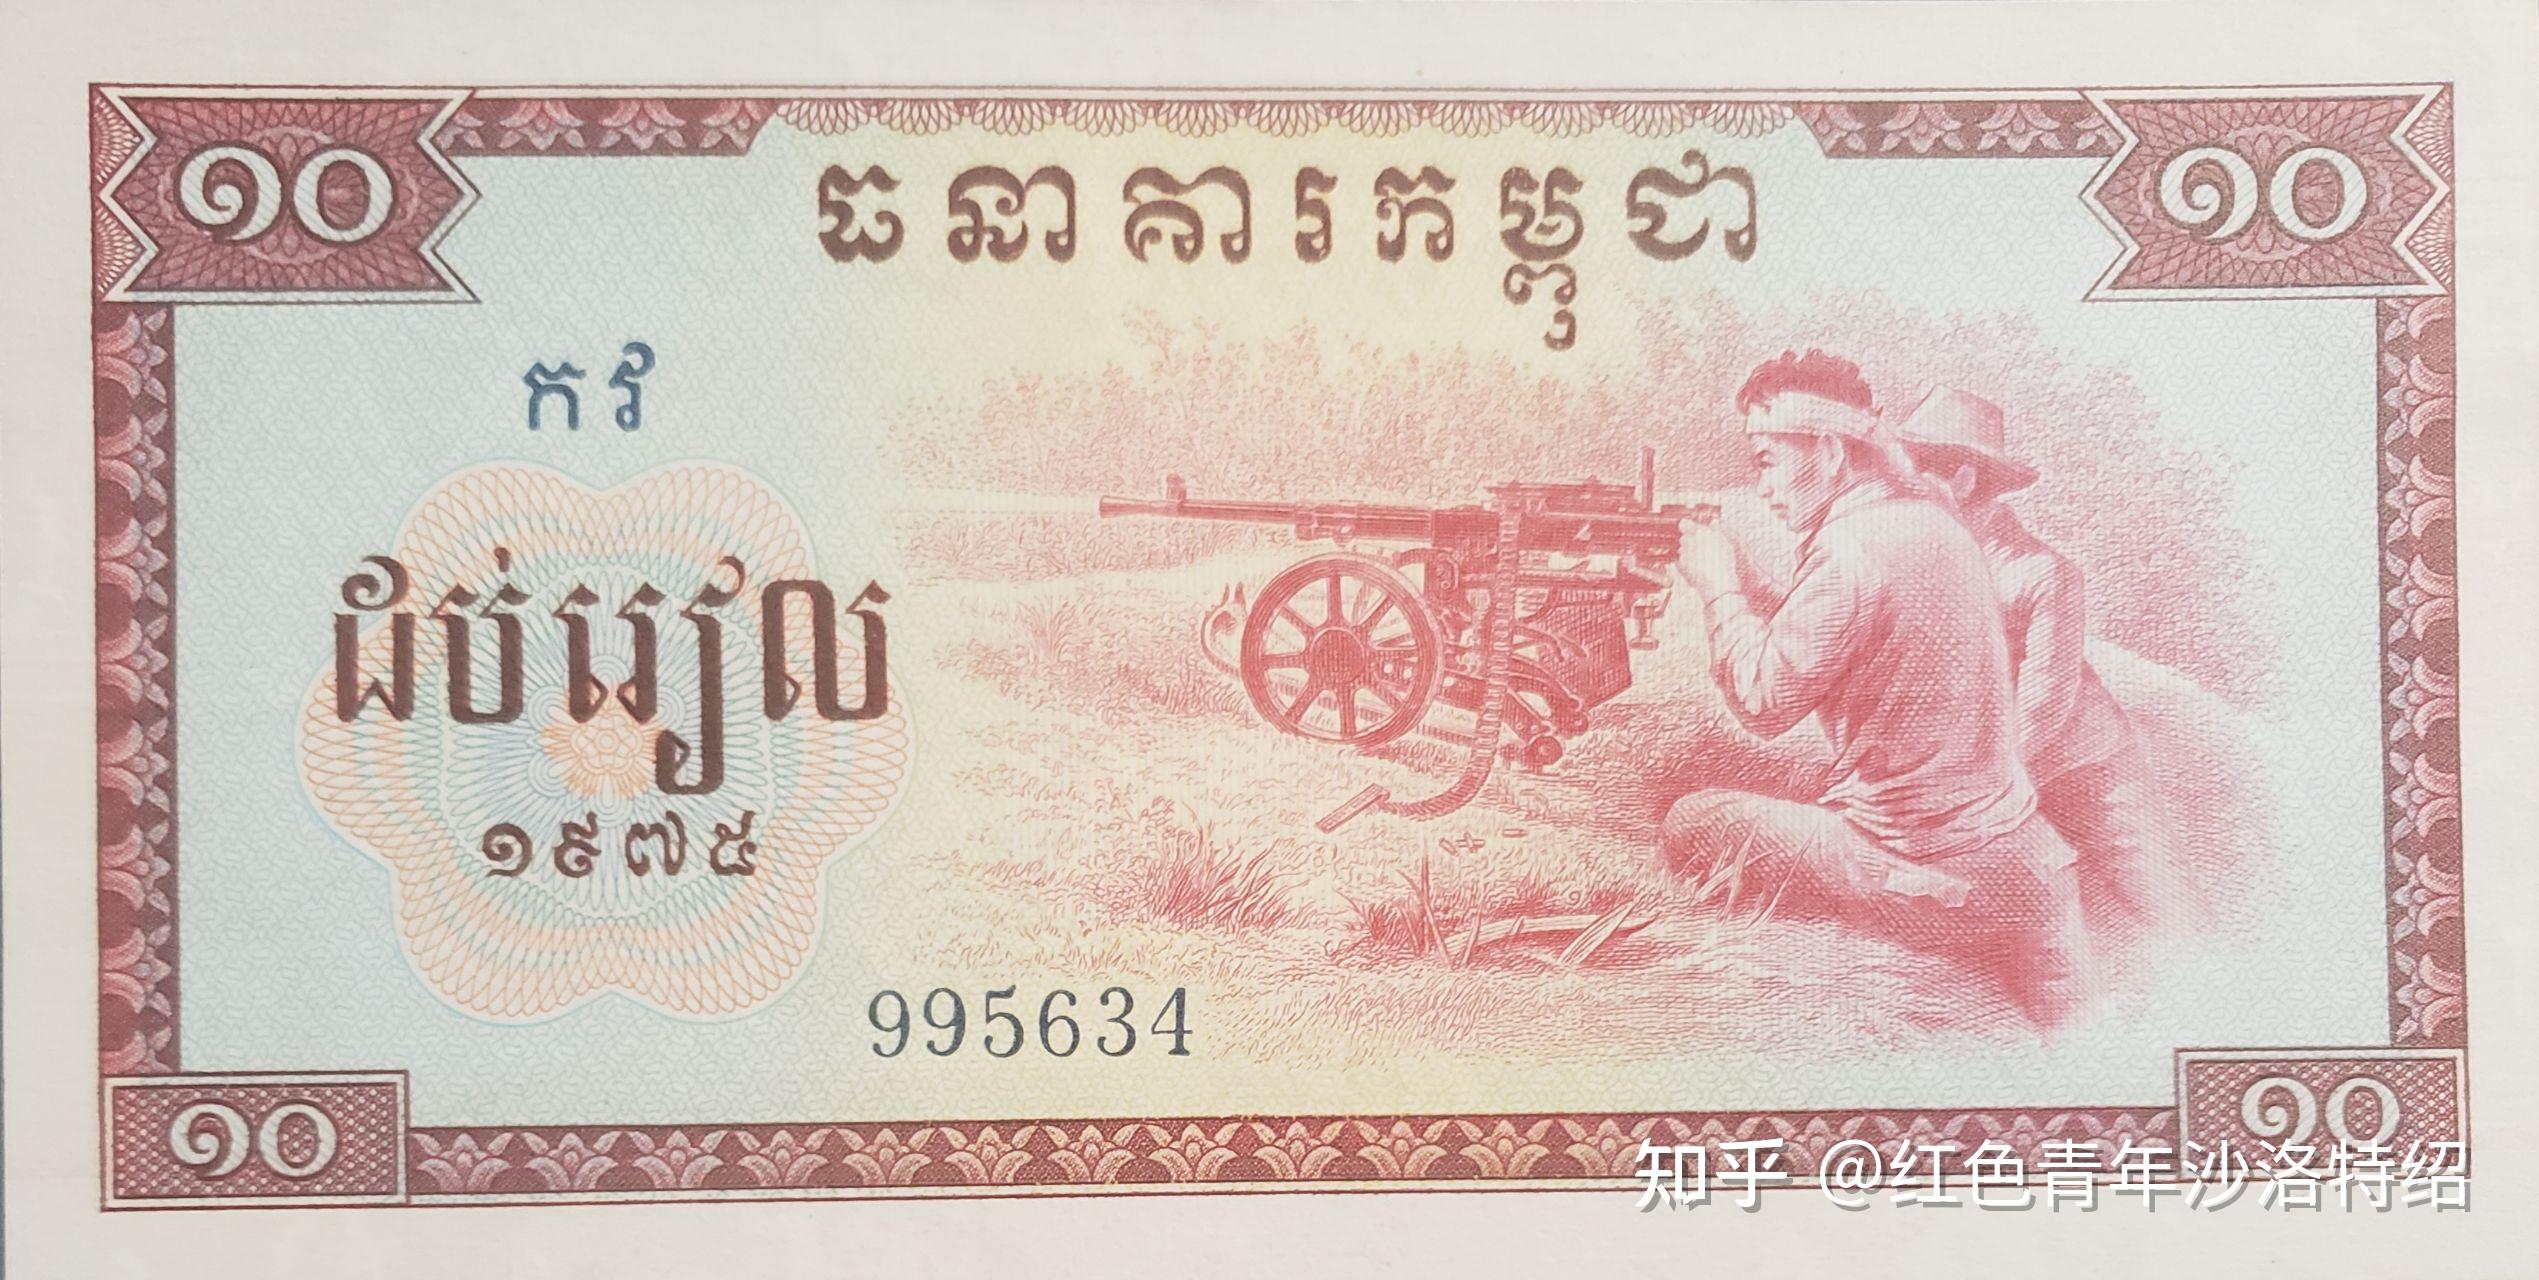 柬埔寨100瑞尔纸币_货币外国币_晴漪收藏【7788收藏__收藏热线】